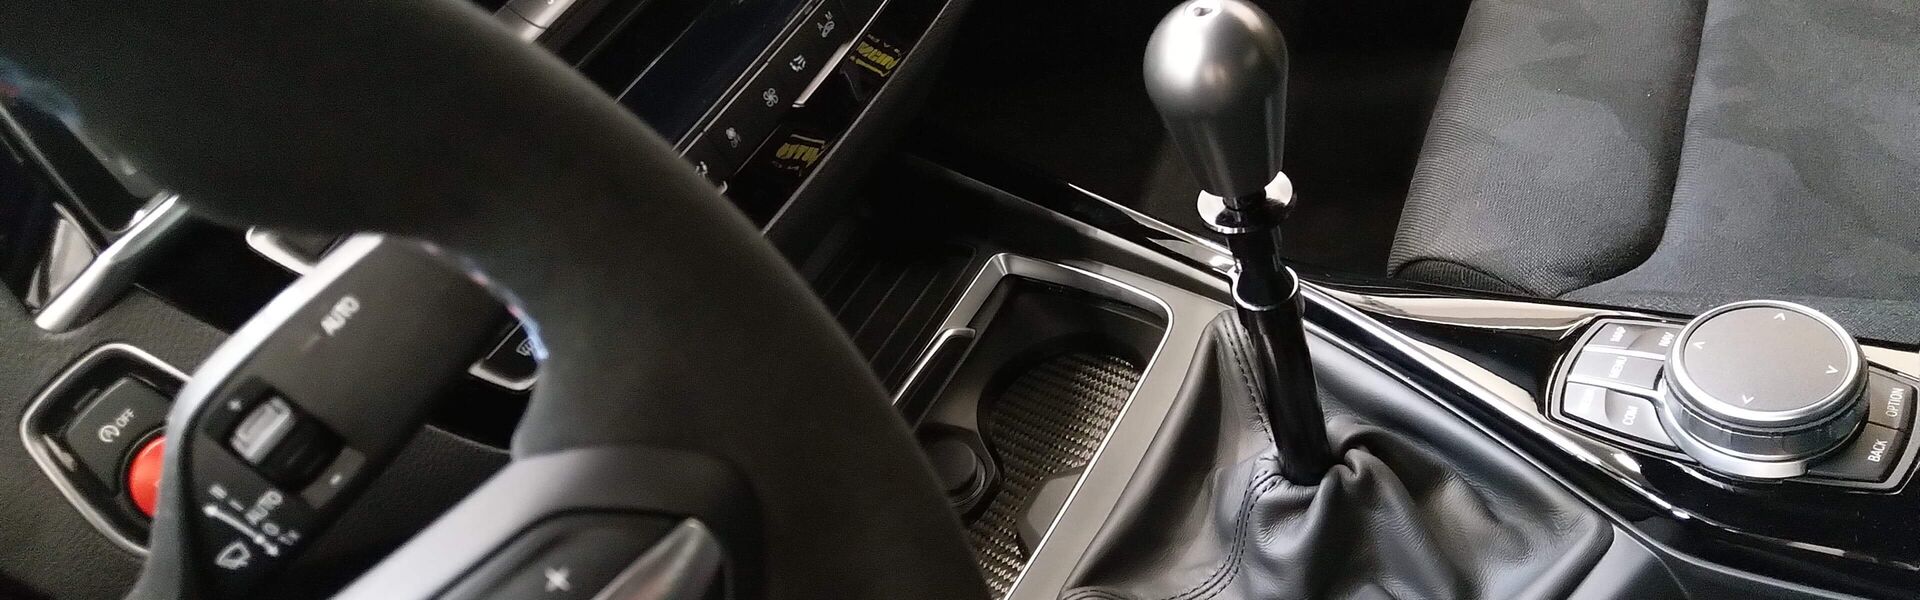 Gearbox/Shift Volkswagen Scirocco R